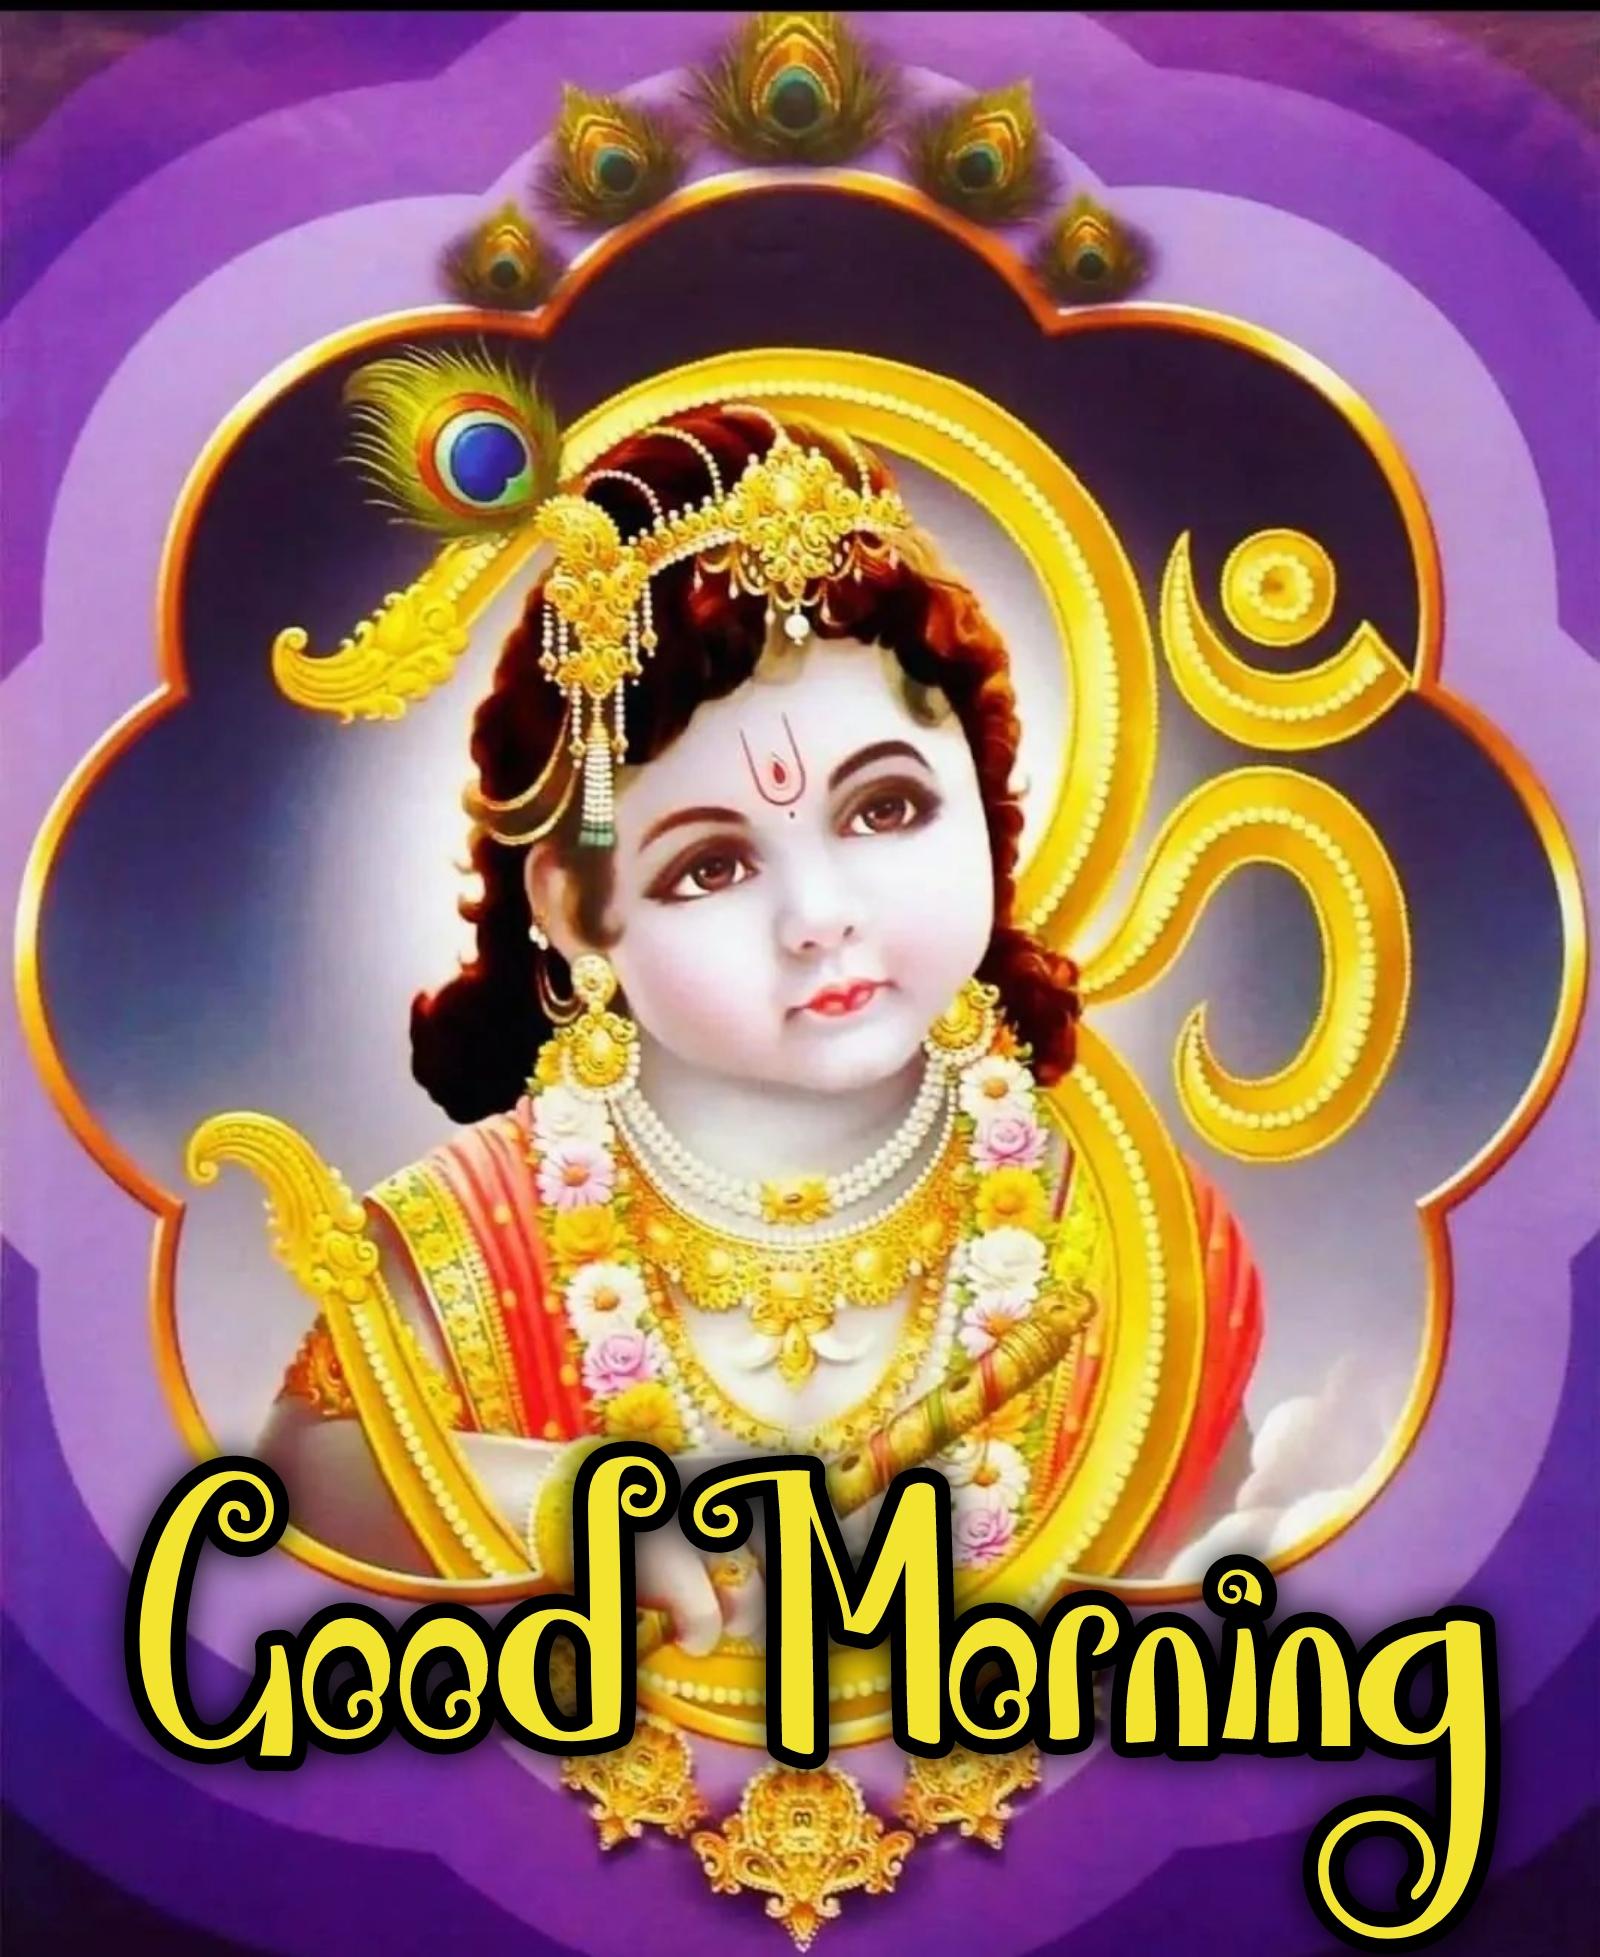 Good Morning Lord Krishna Images - ShayariMaza